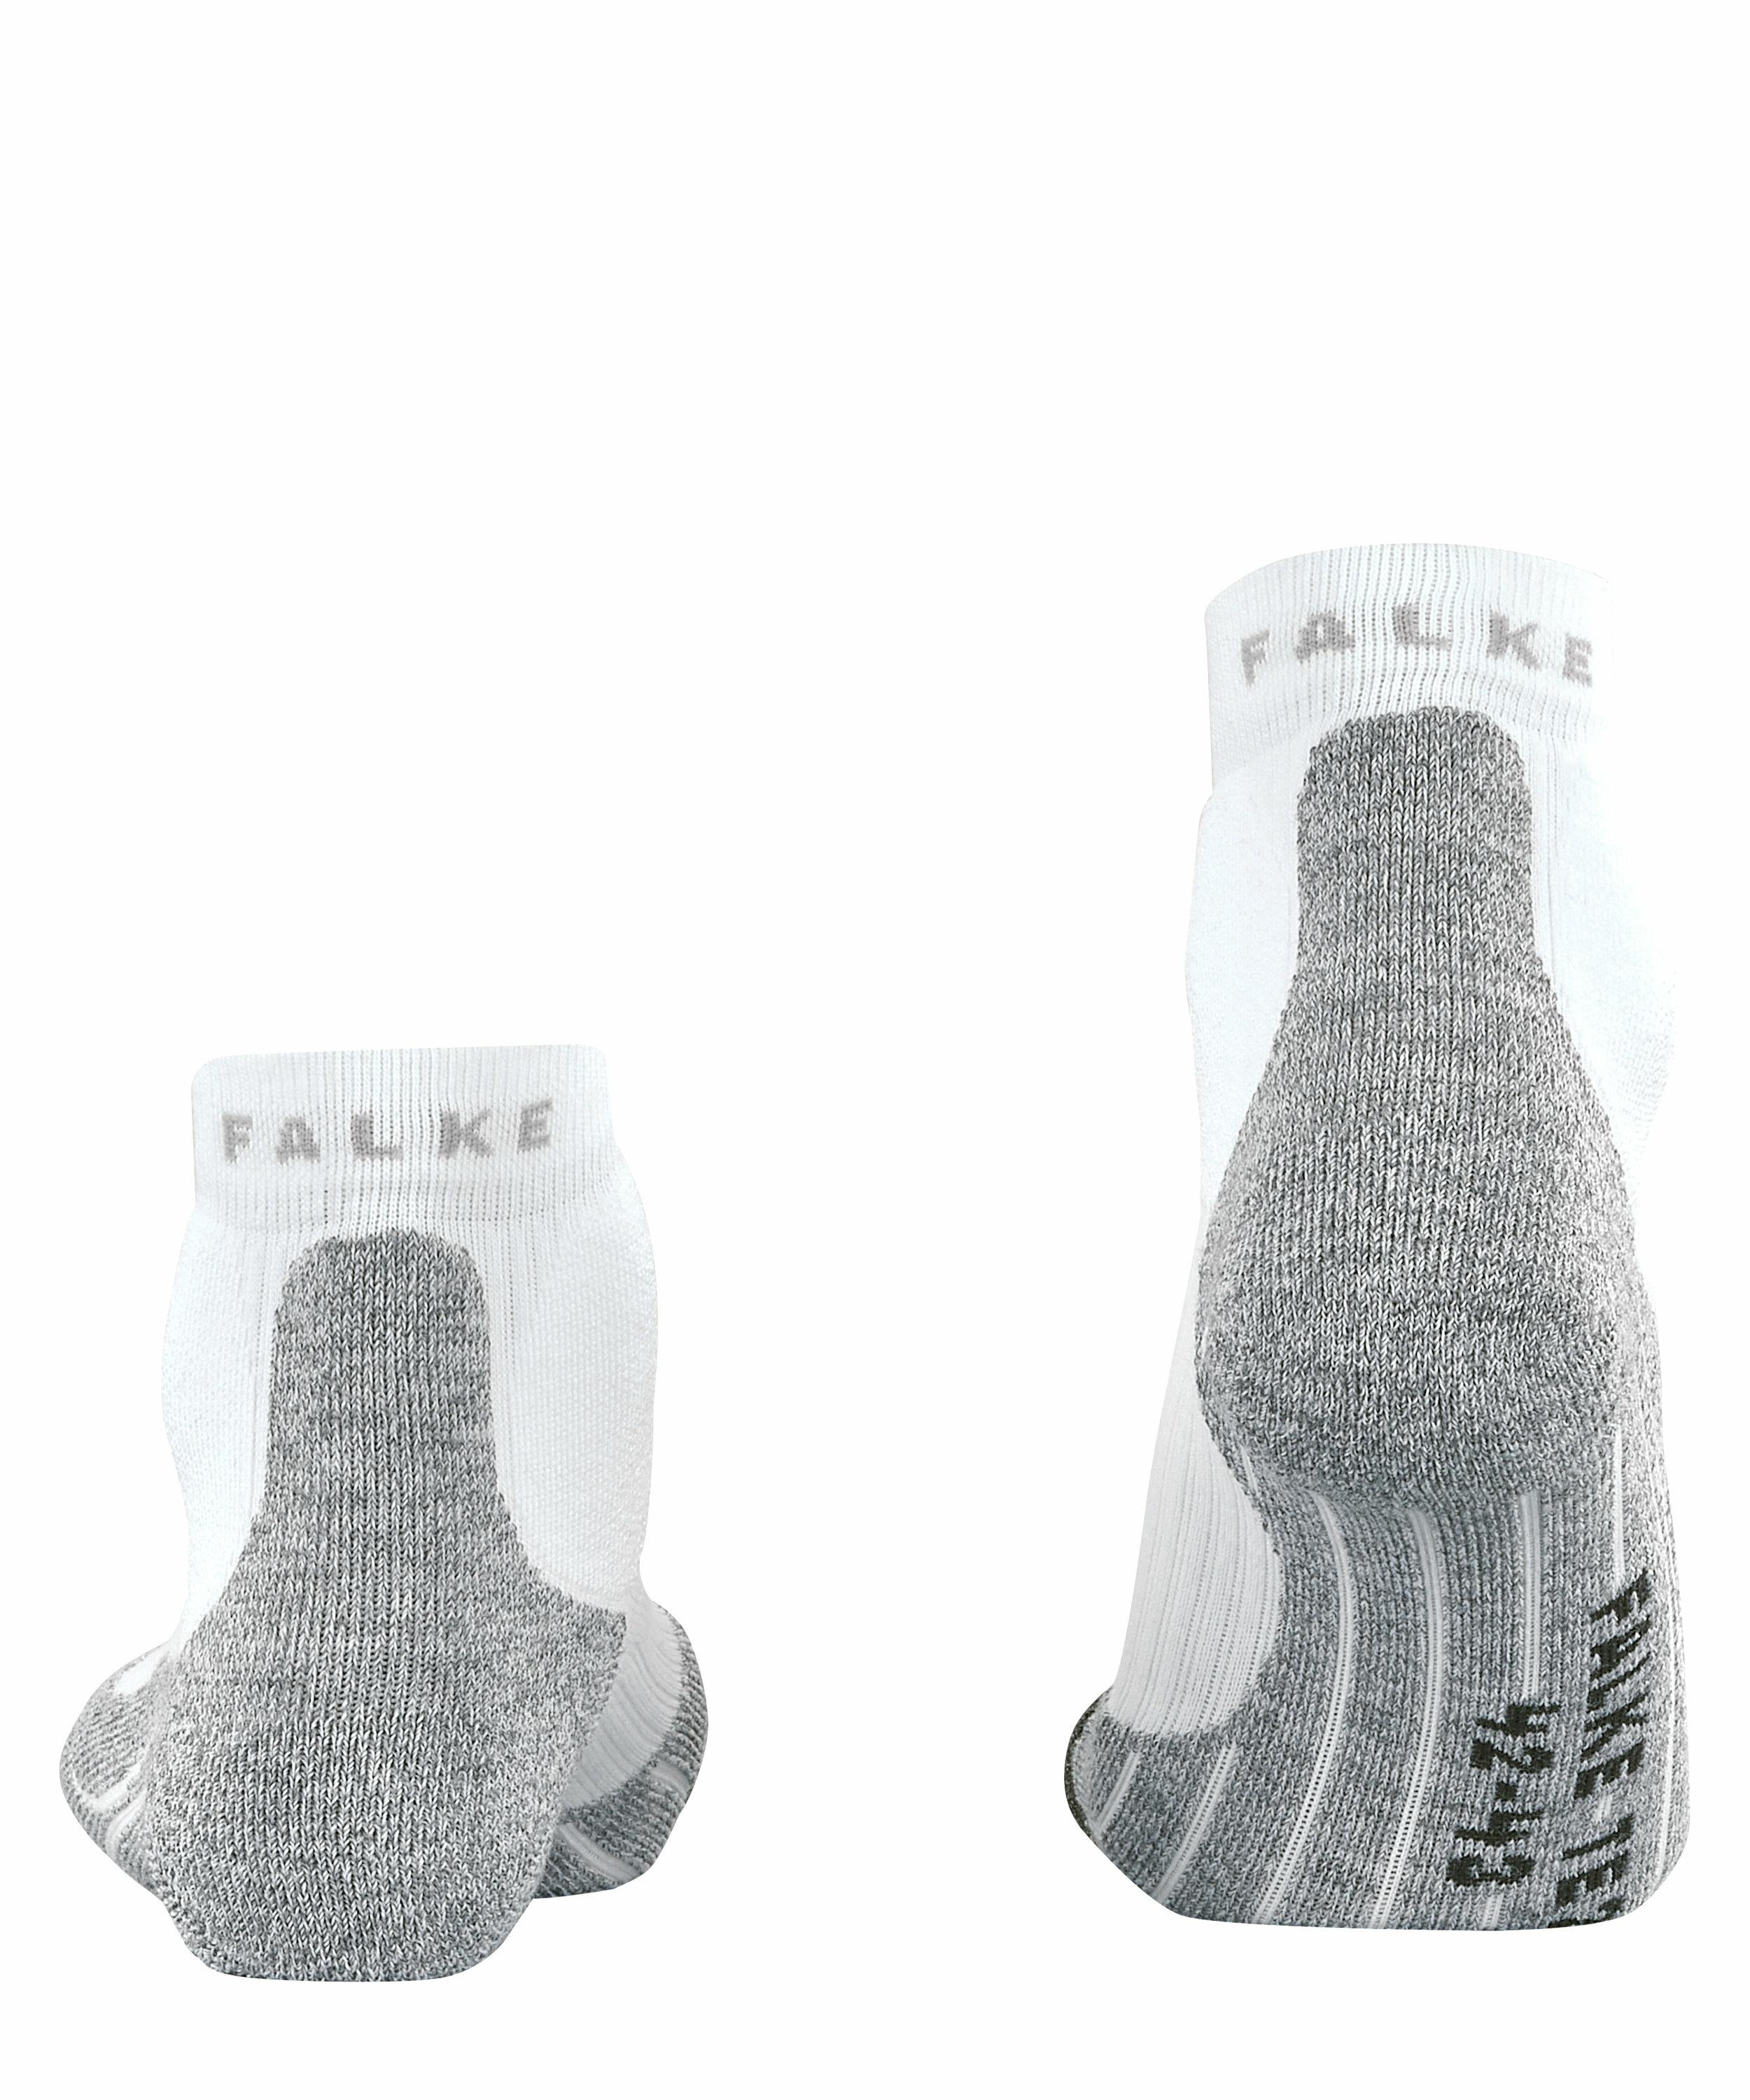 FALKE TE2 Short Herren Tennis Socken, 44-45, Weiß, Baumwolle, 16809-202004 günstig online kaufen